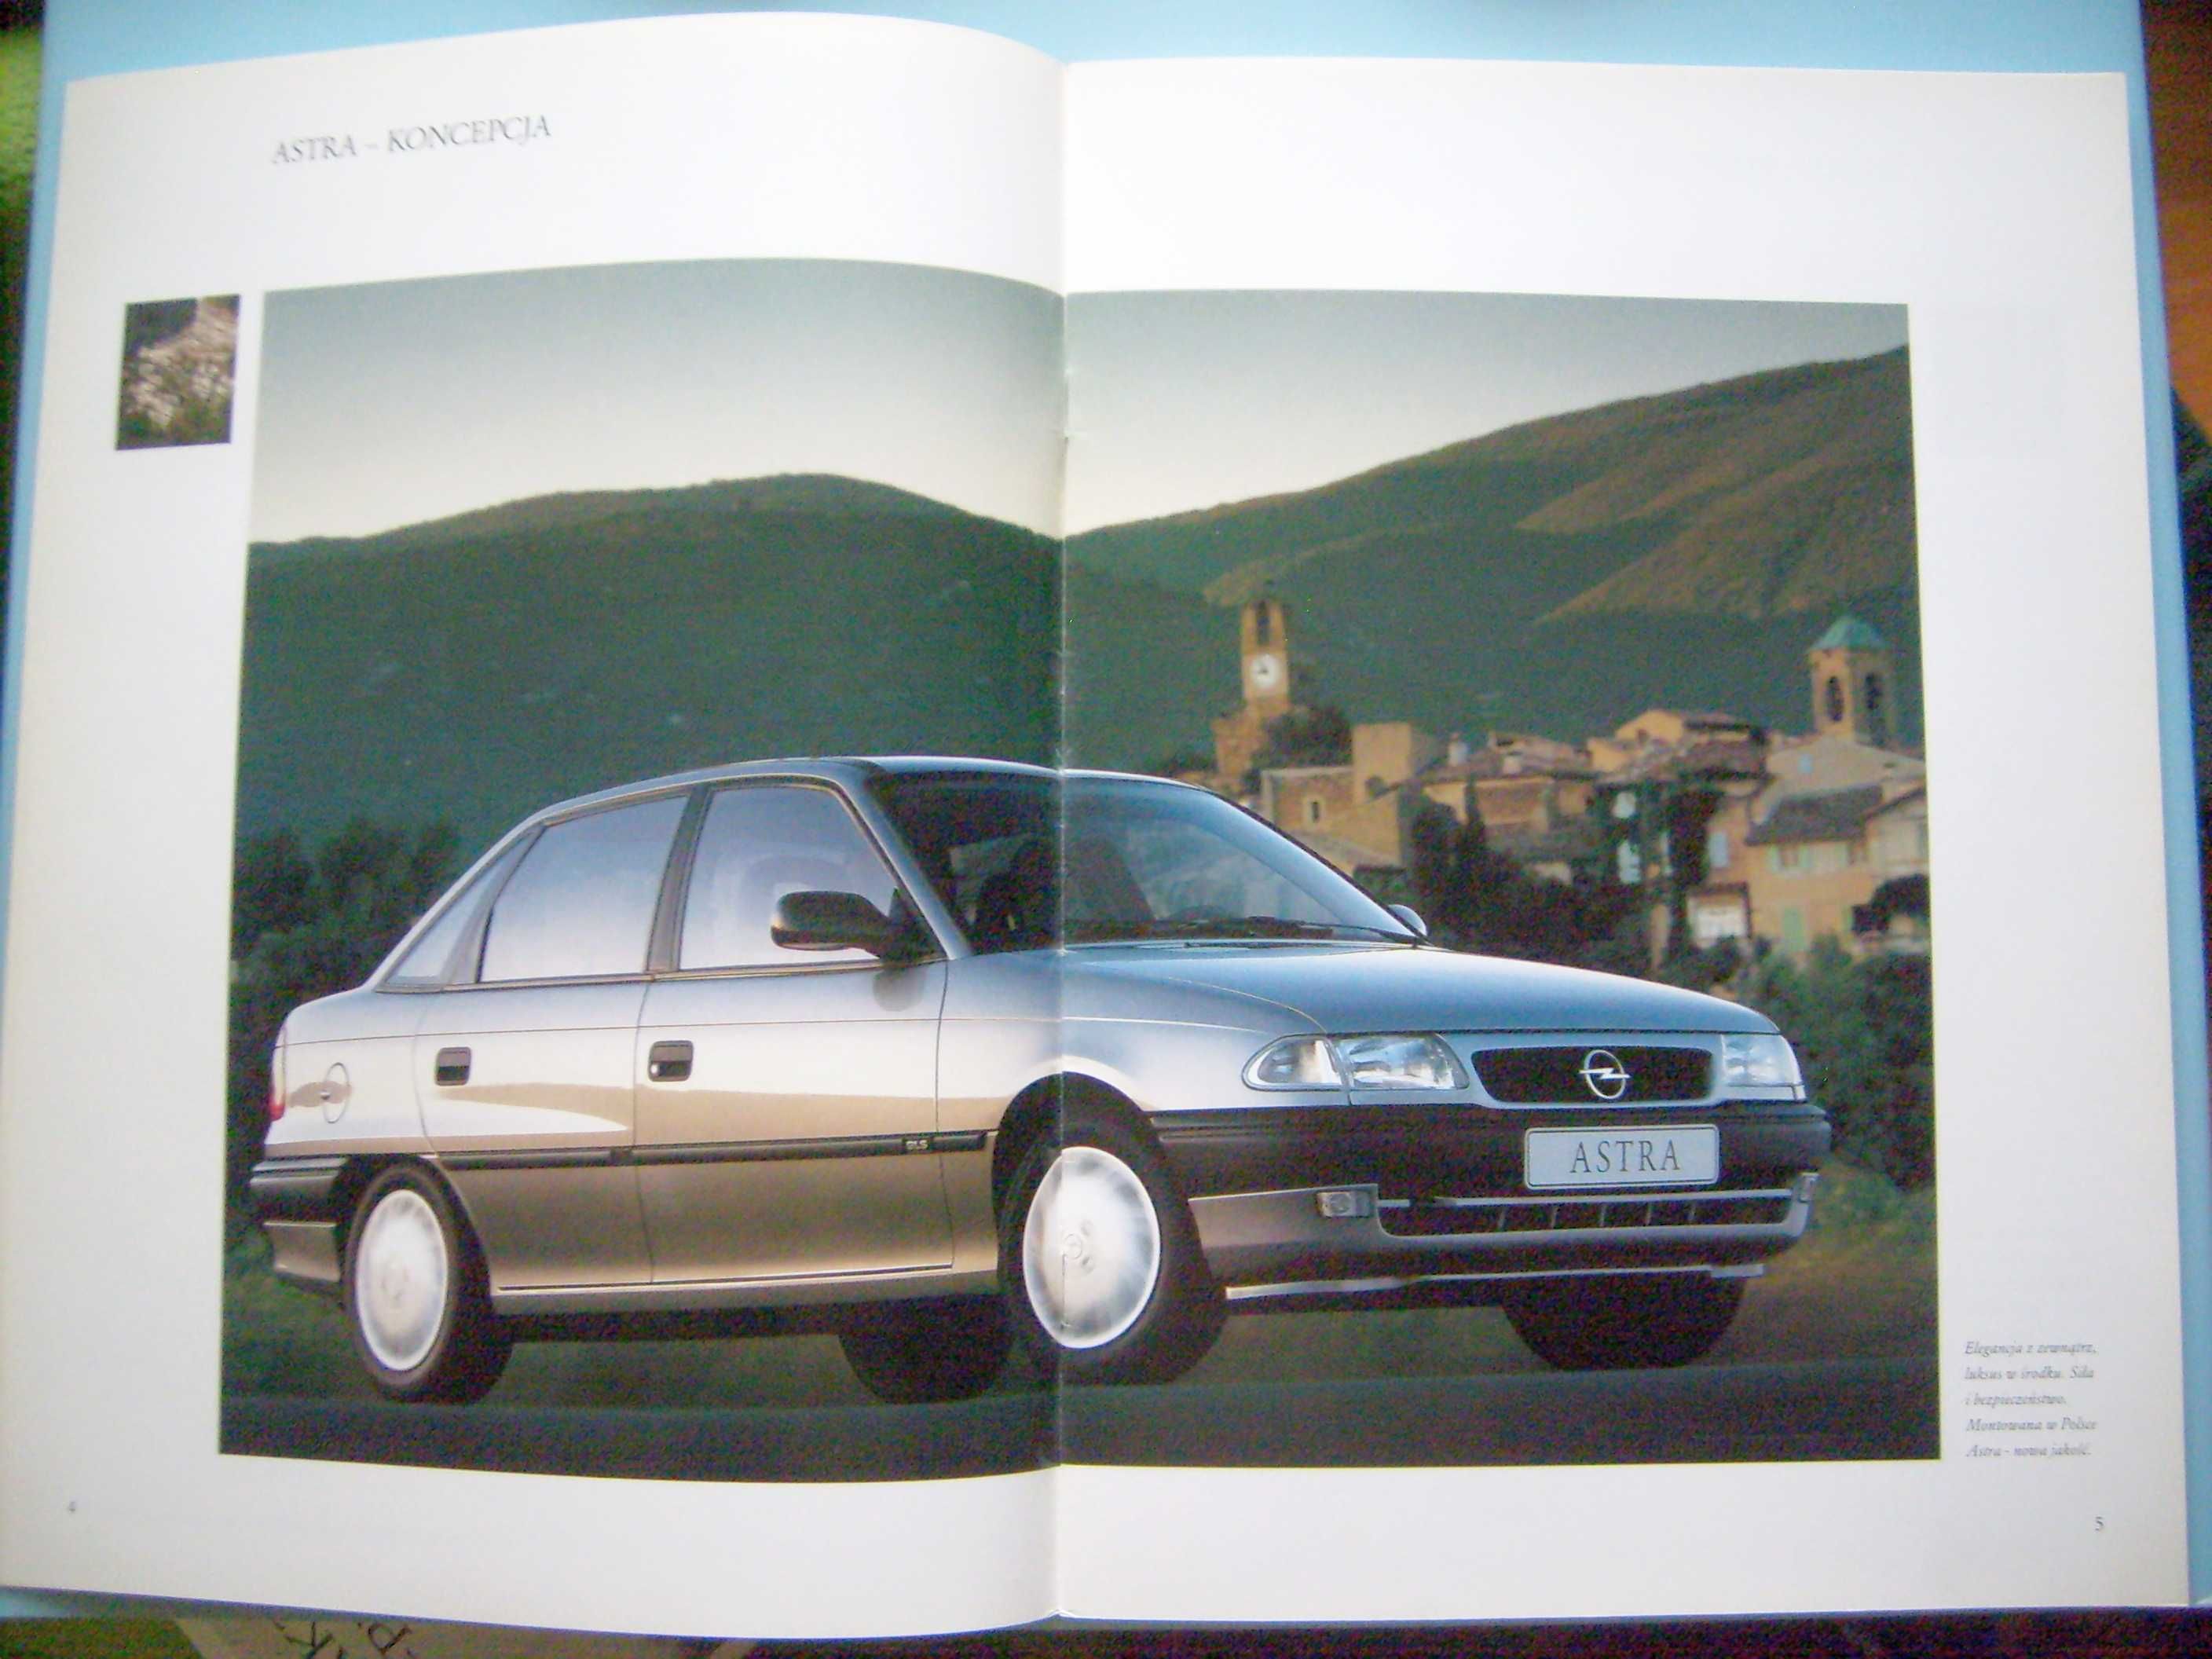 Opel Astra F Sedan '97 POLSKA / prospekt 28 str., WYPRZEDAŻ RABATY !